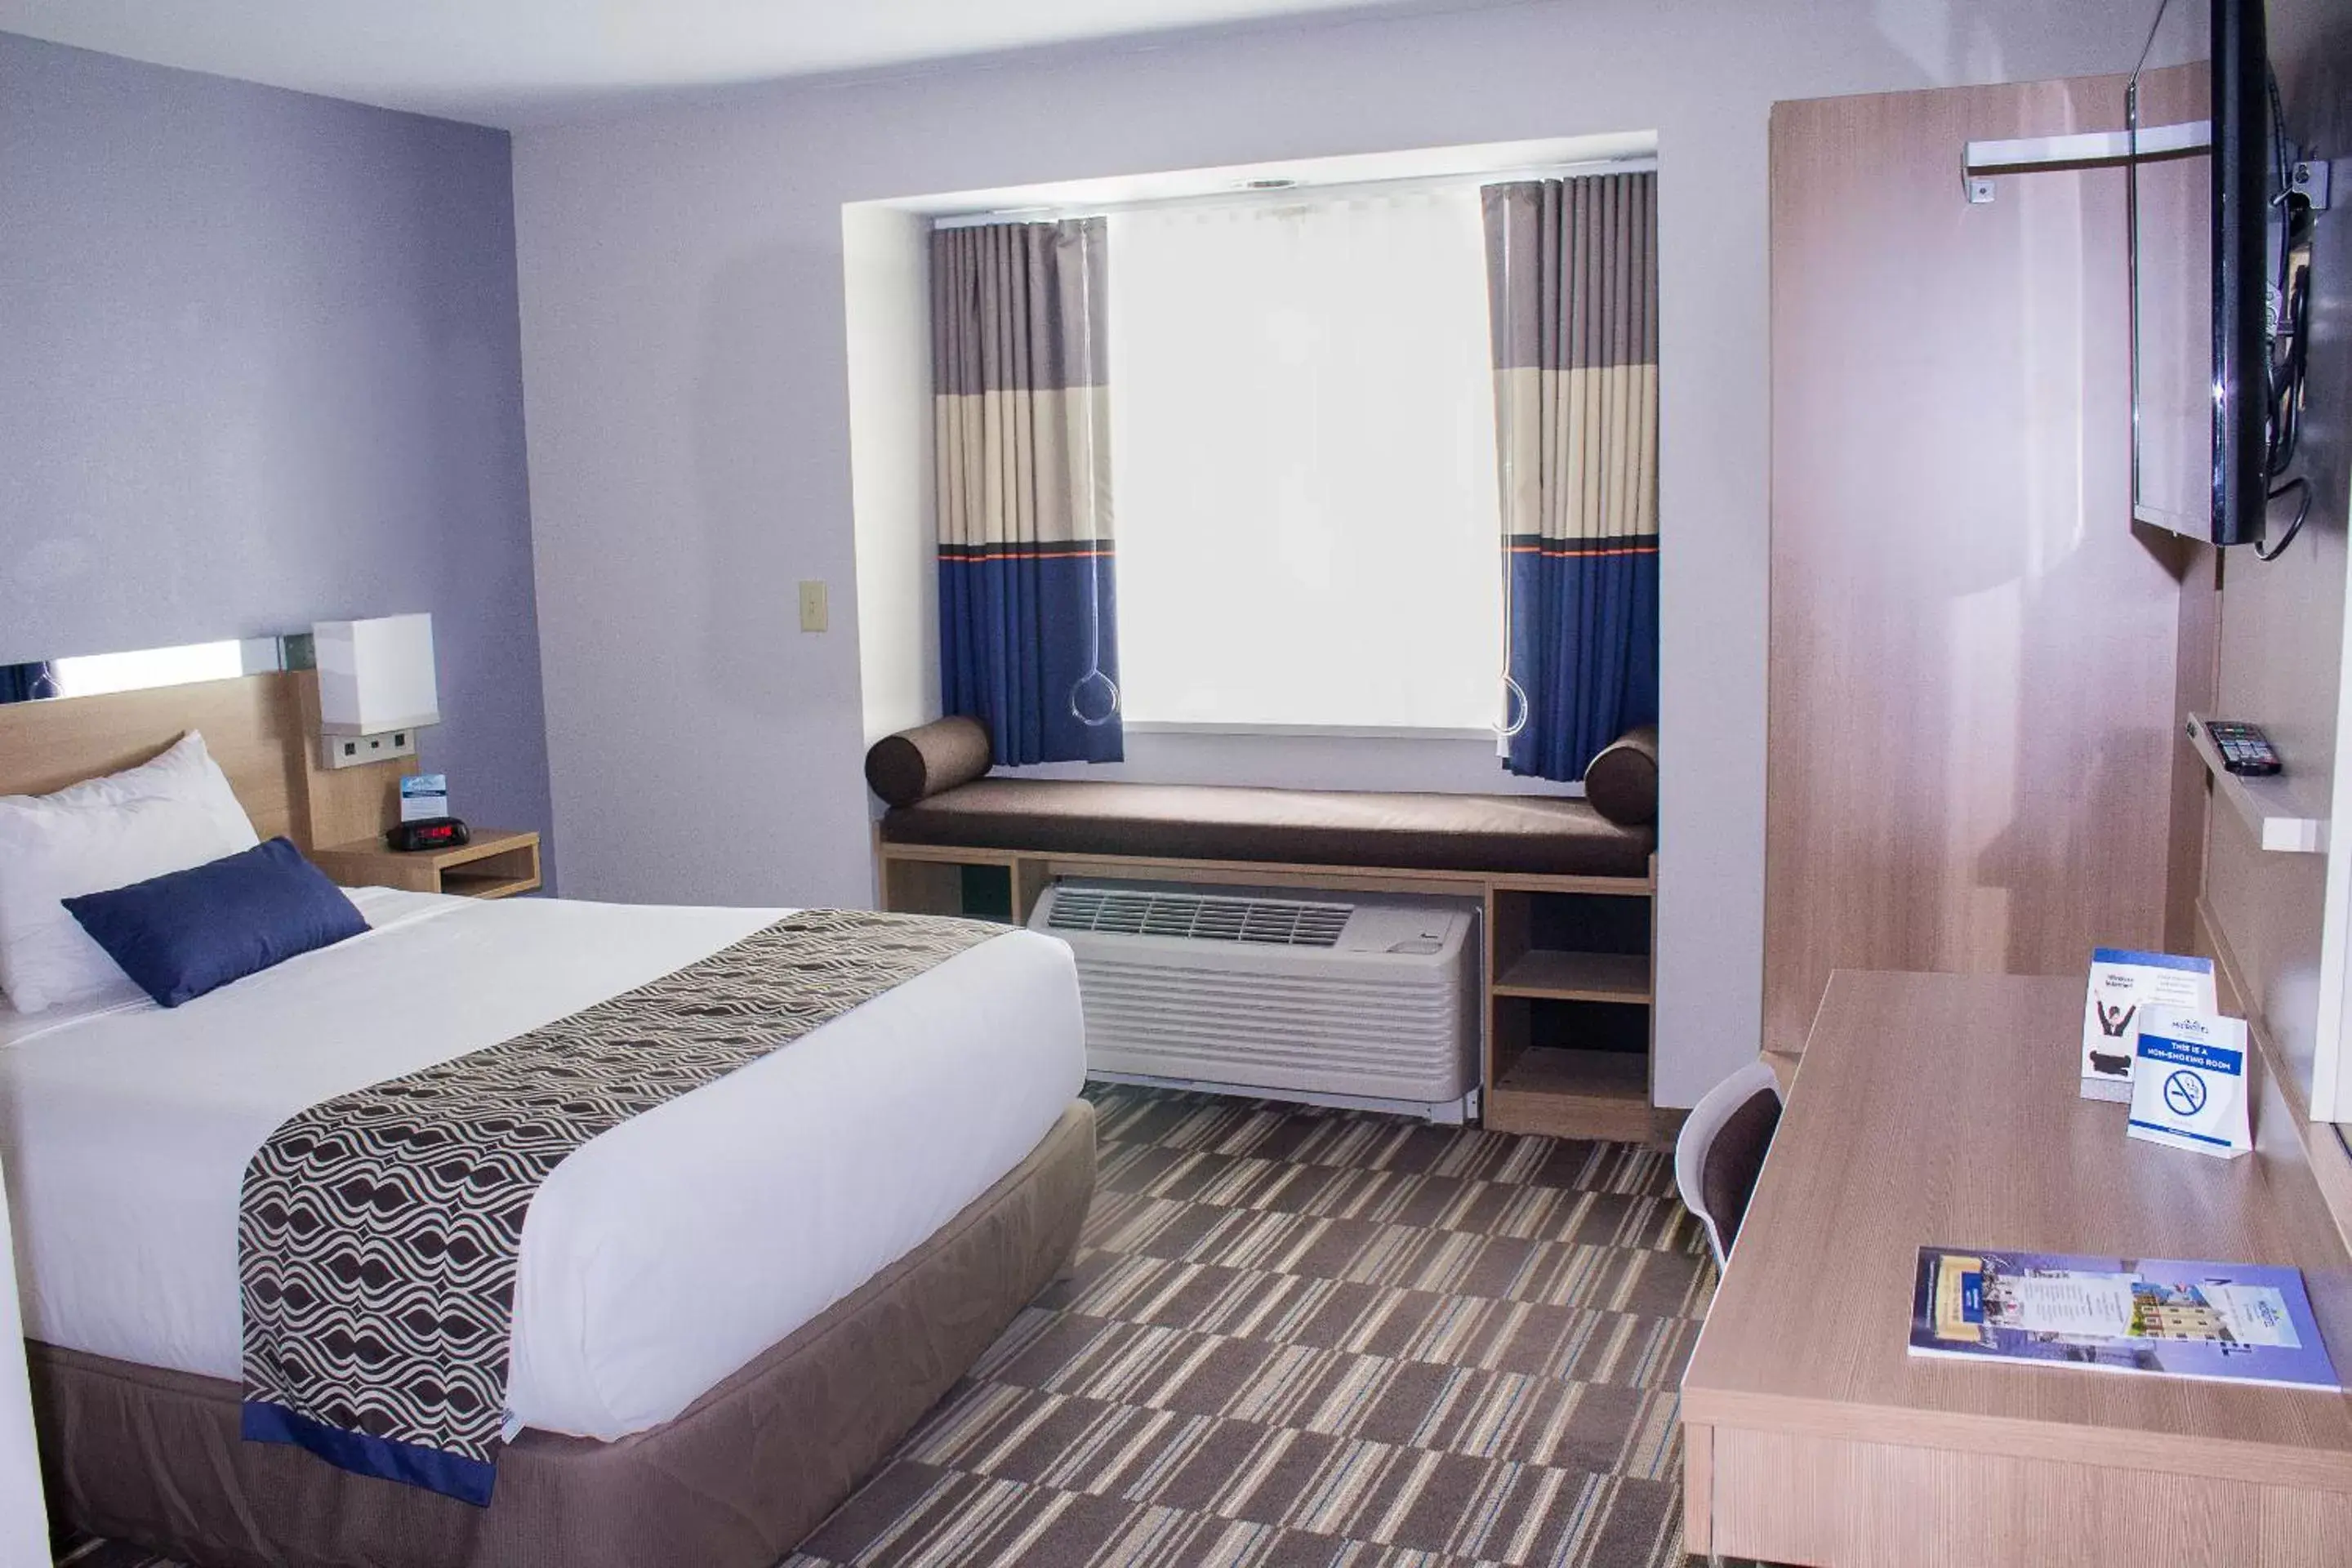 Bed in Microtel Inn & Suites by Wyndham - Penn Yan